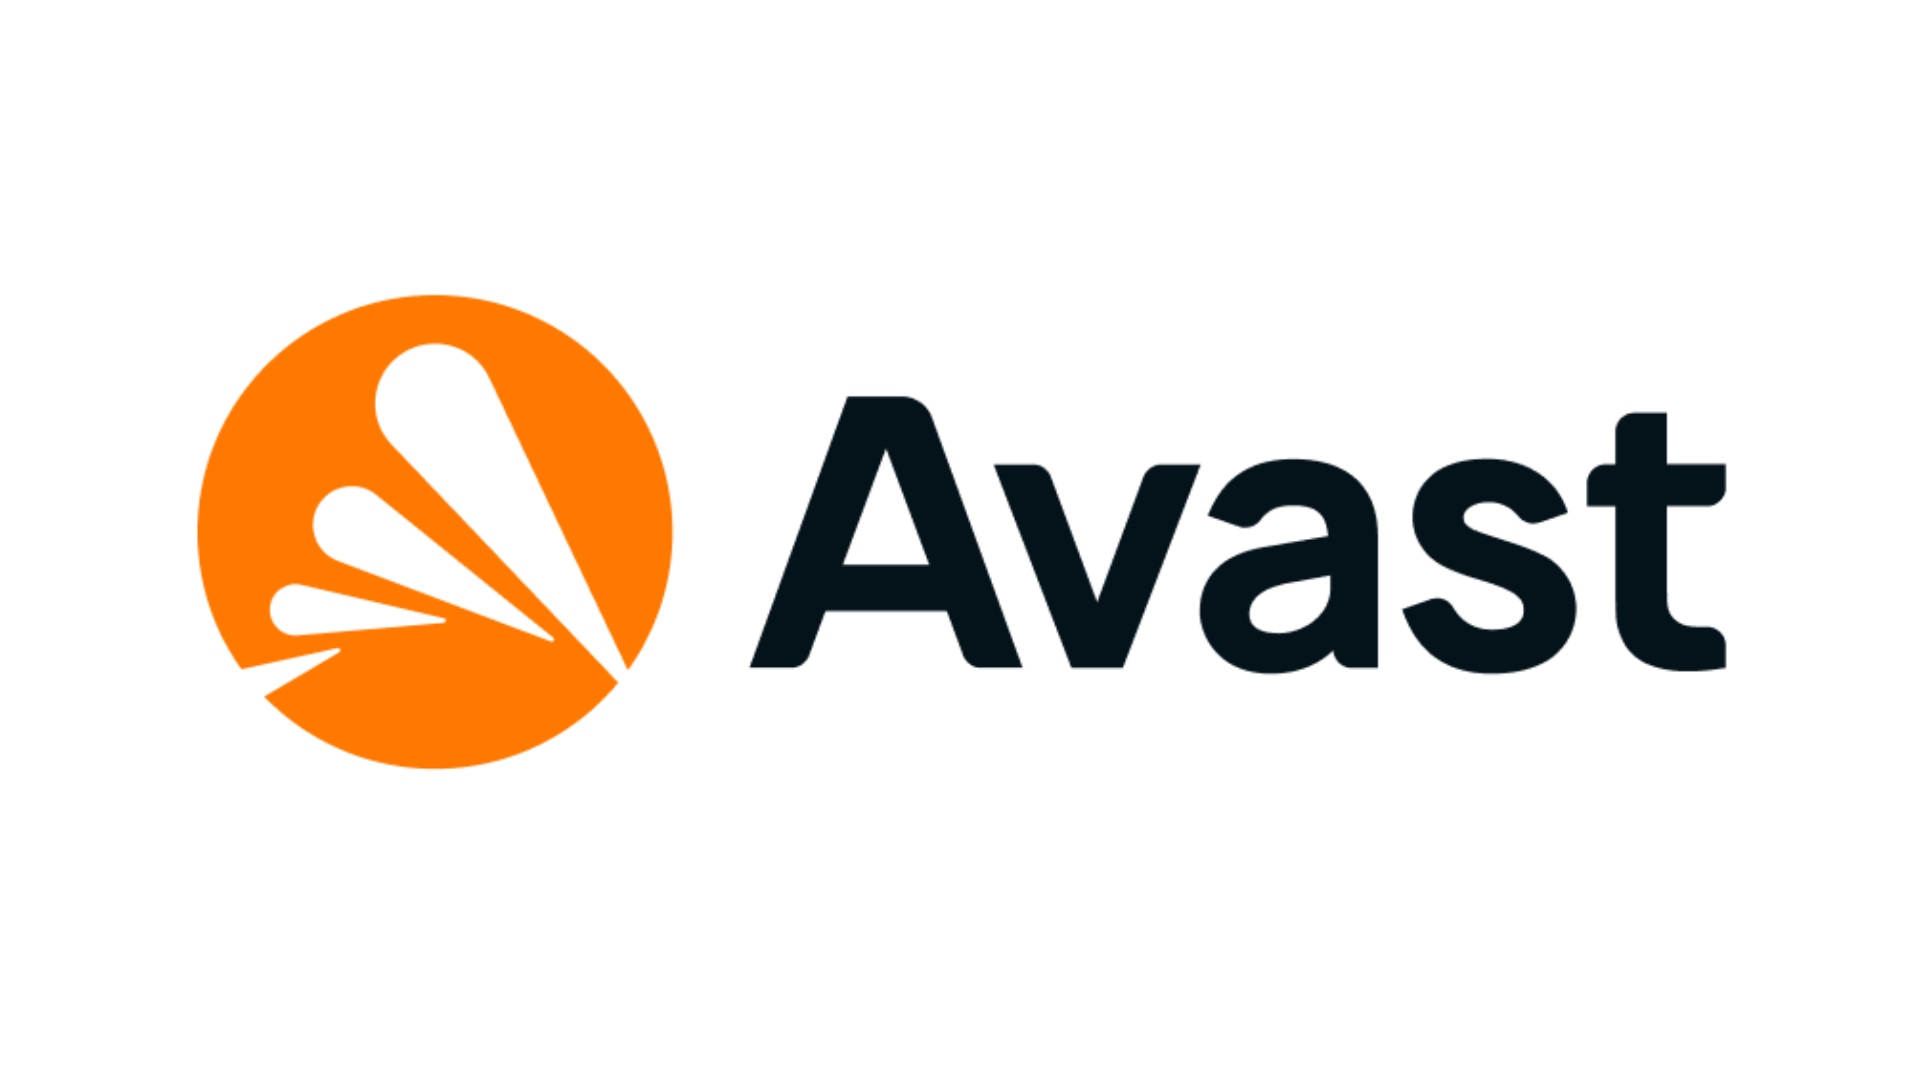 Antivirus paling apik: Avast. Gambar nuduhake logo perusahaan